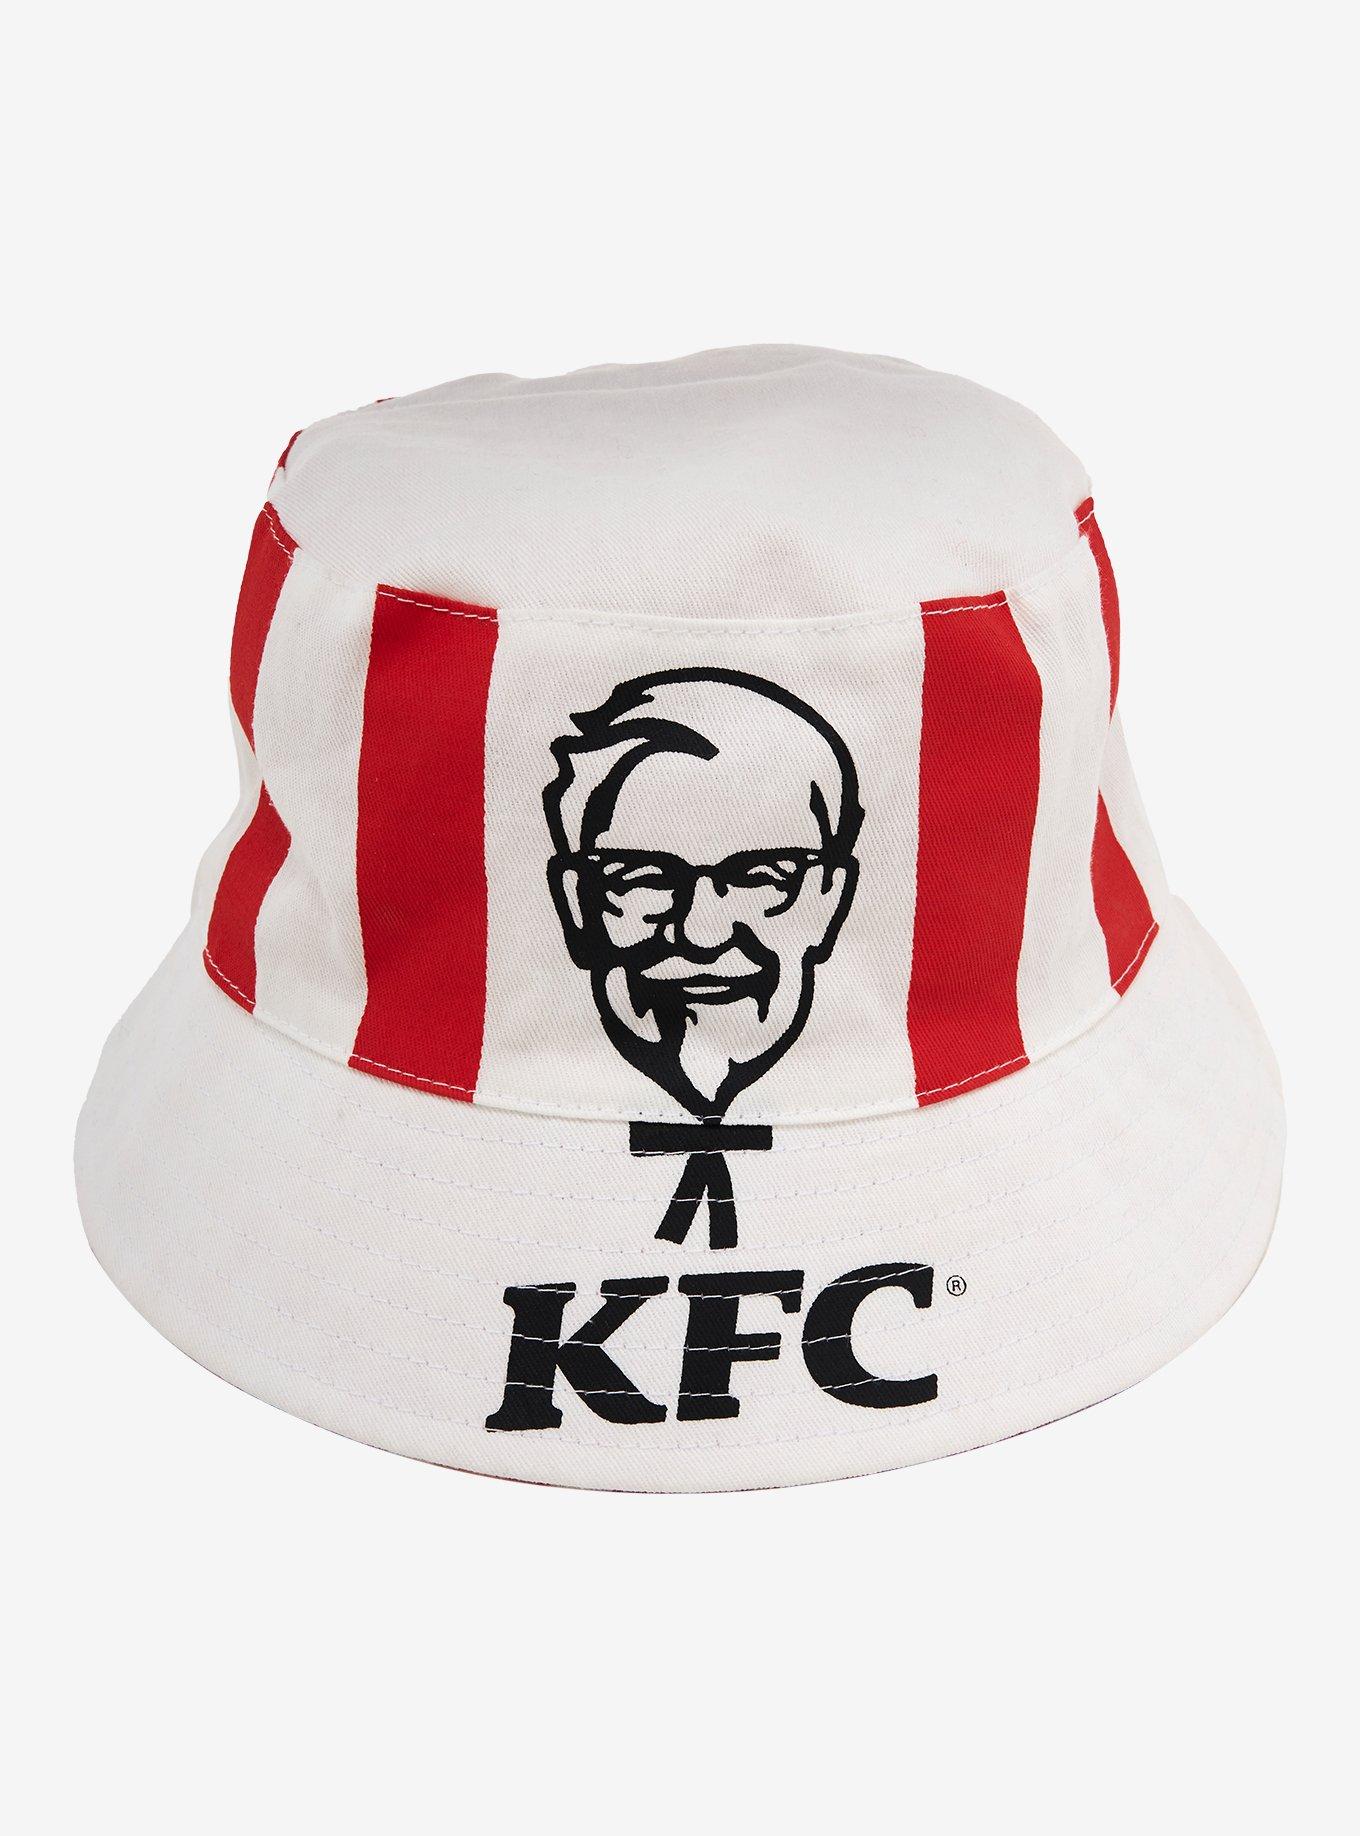 KFC Chicken Bucket Reversible Bucket Hat - BoxLunch Exclusive, , hi-res